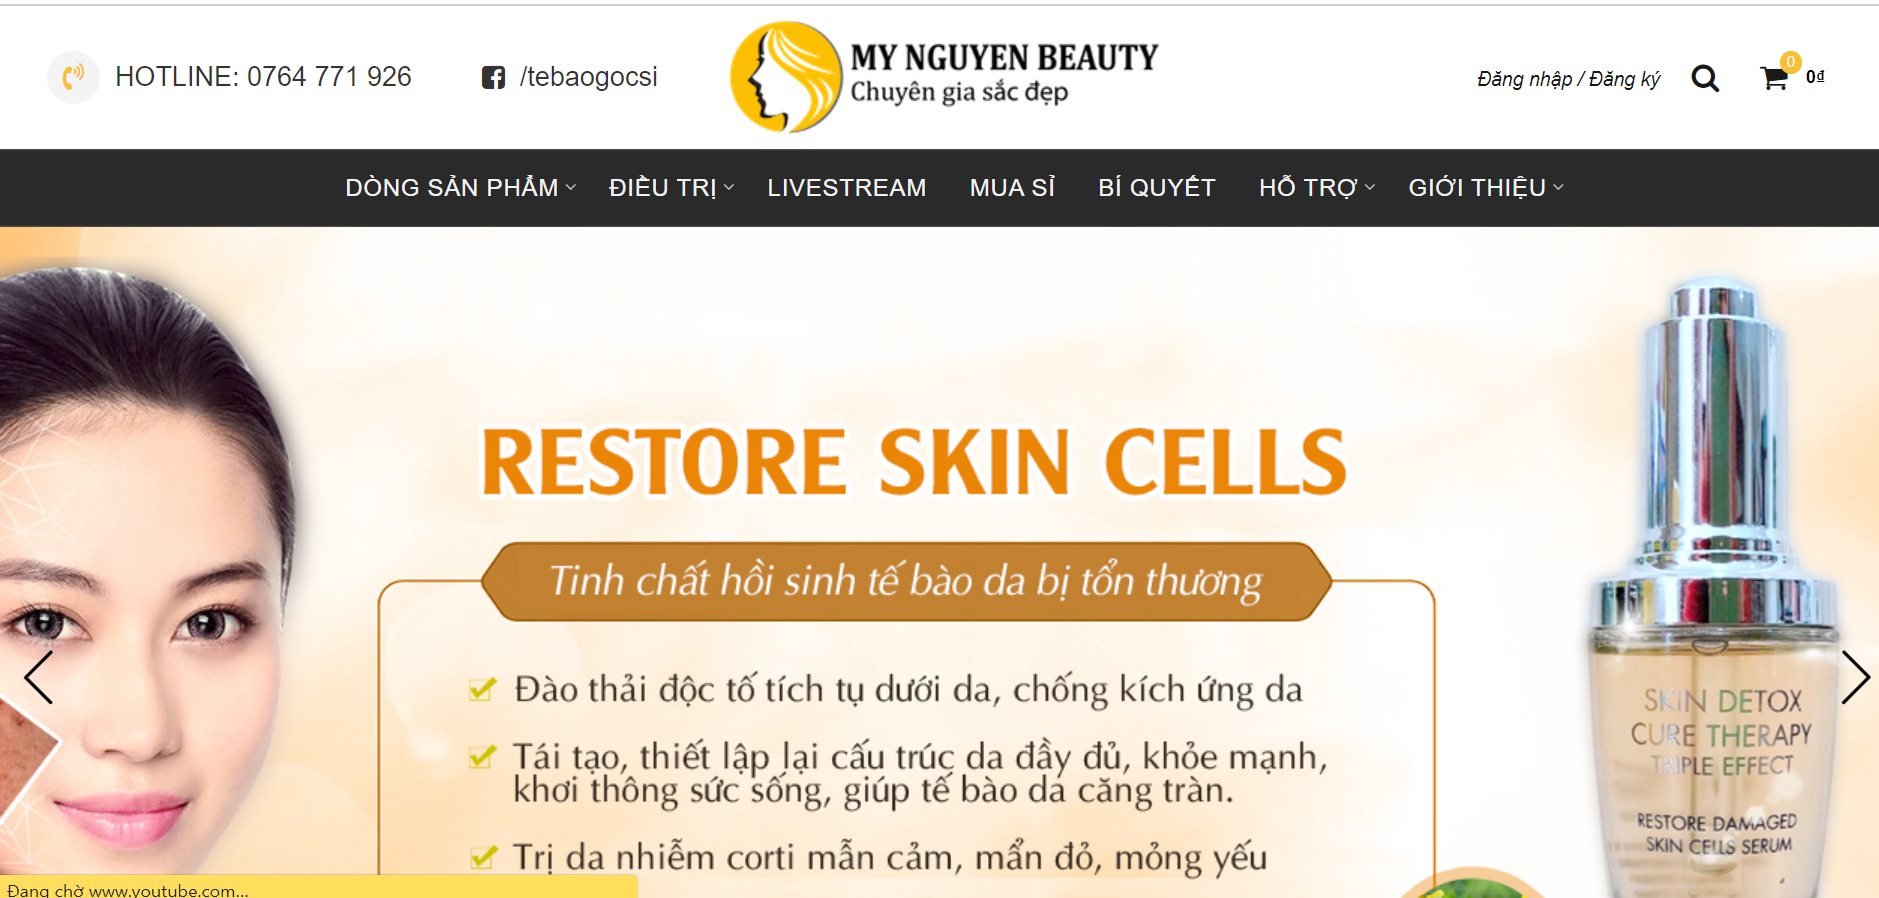 Mynguyenbeauty phân phối Skin therapy Couperose Cream